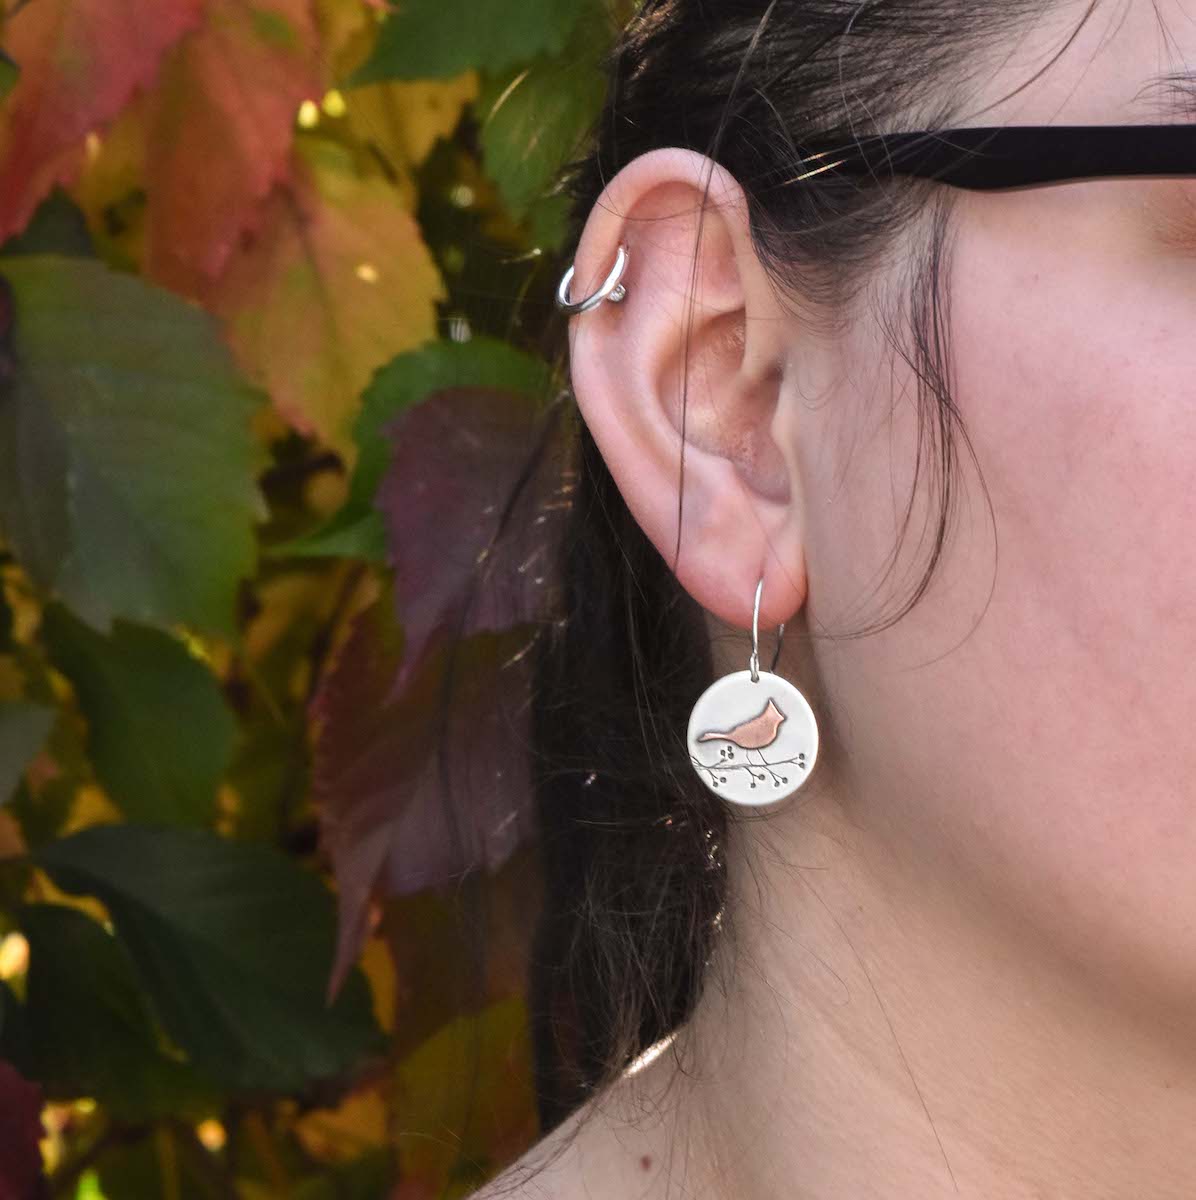 Cardinal Earrings - Mixed Metal Earrings   5666 - handmade by Beth Millner Jewelry